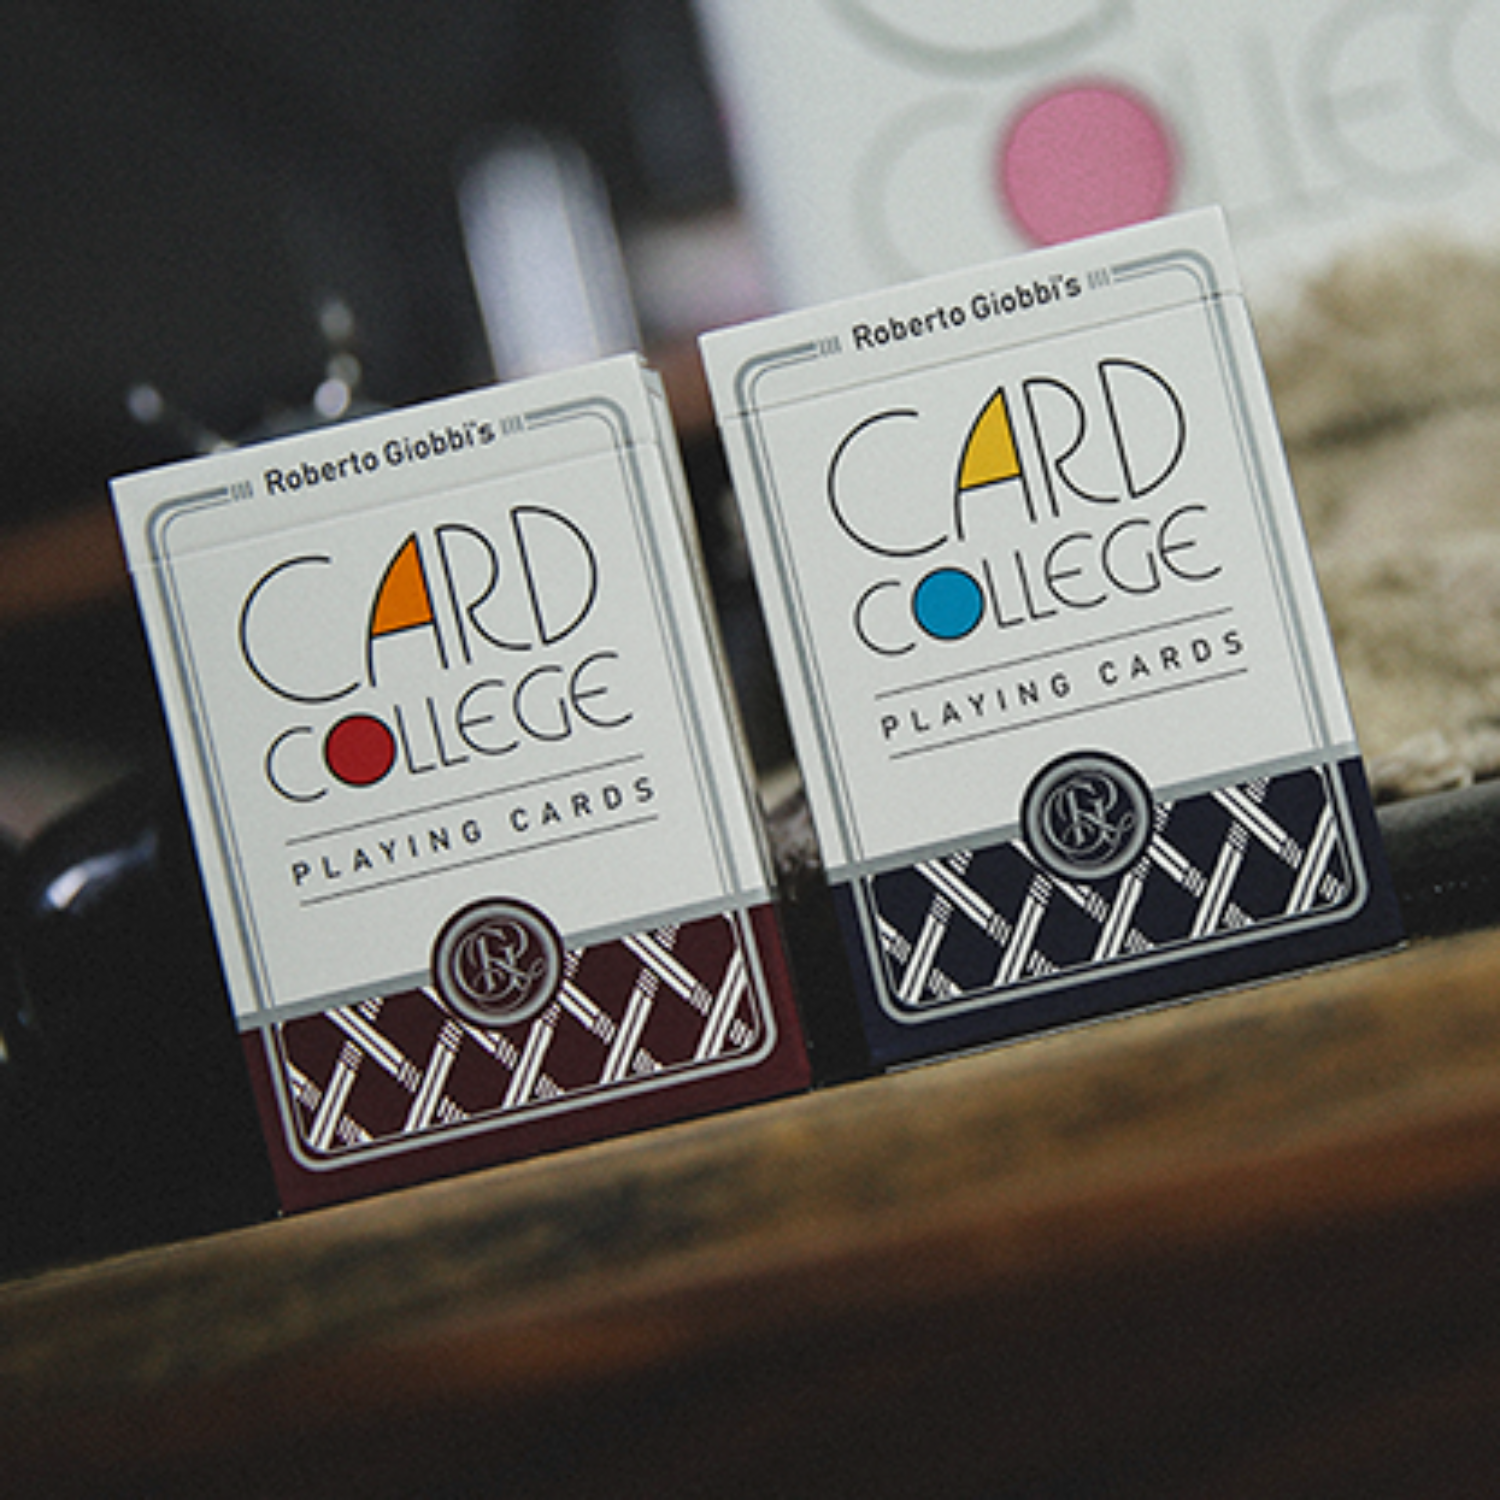 [카드컬리지/레드]Card College (Red) Playing Cards by Robert Giobbi and TCC Presents